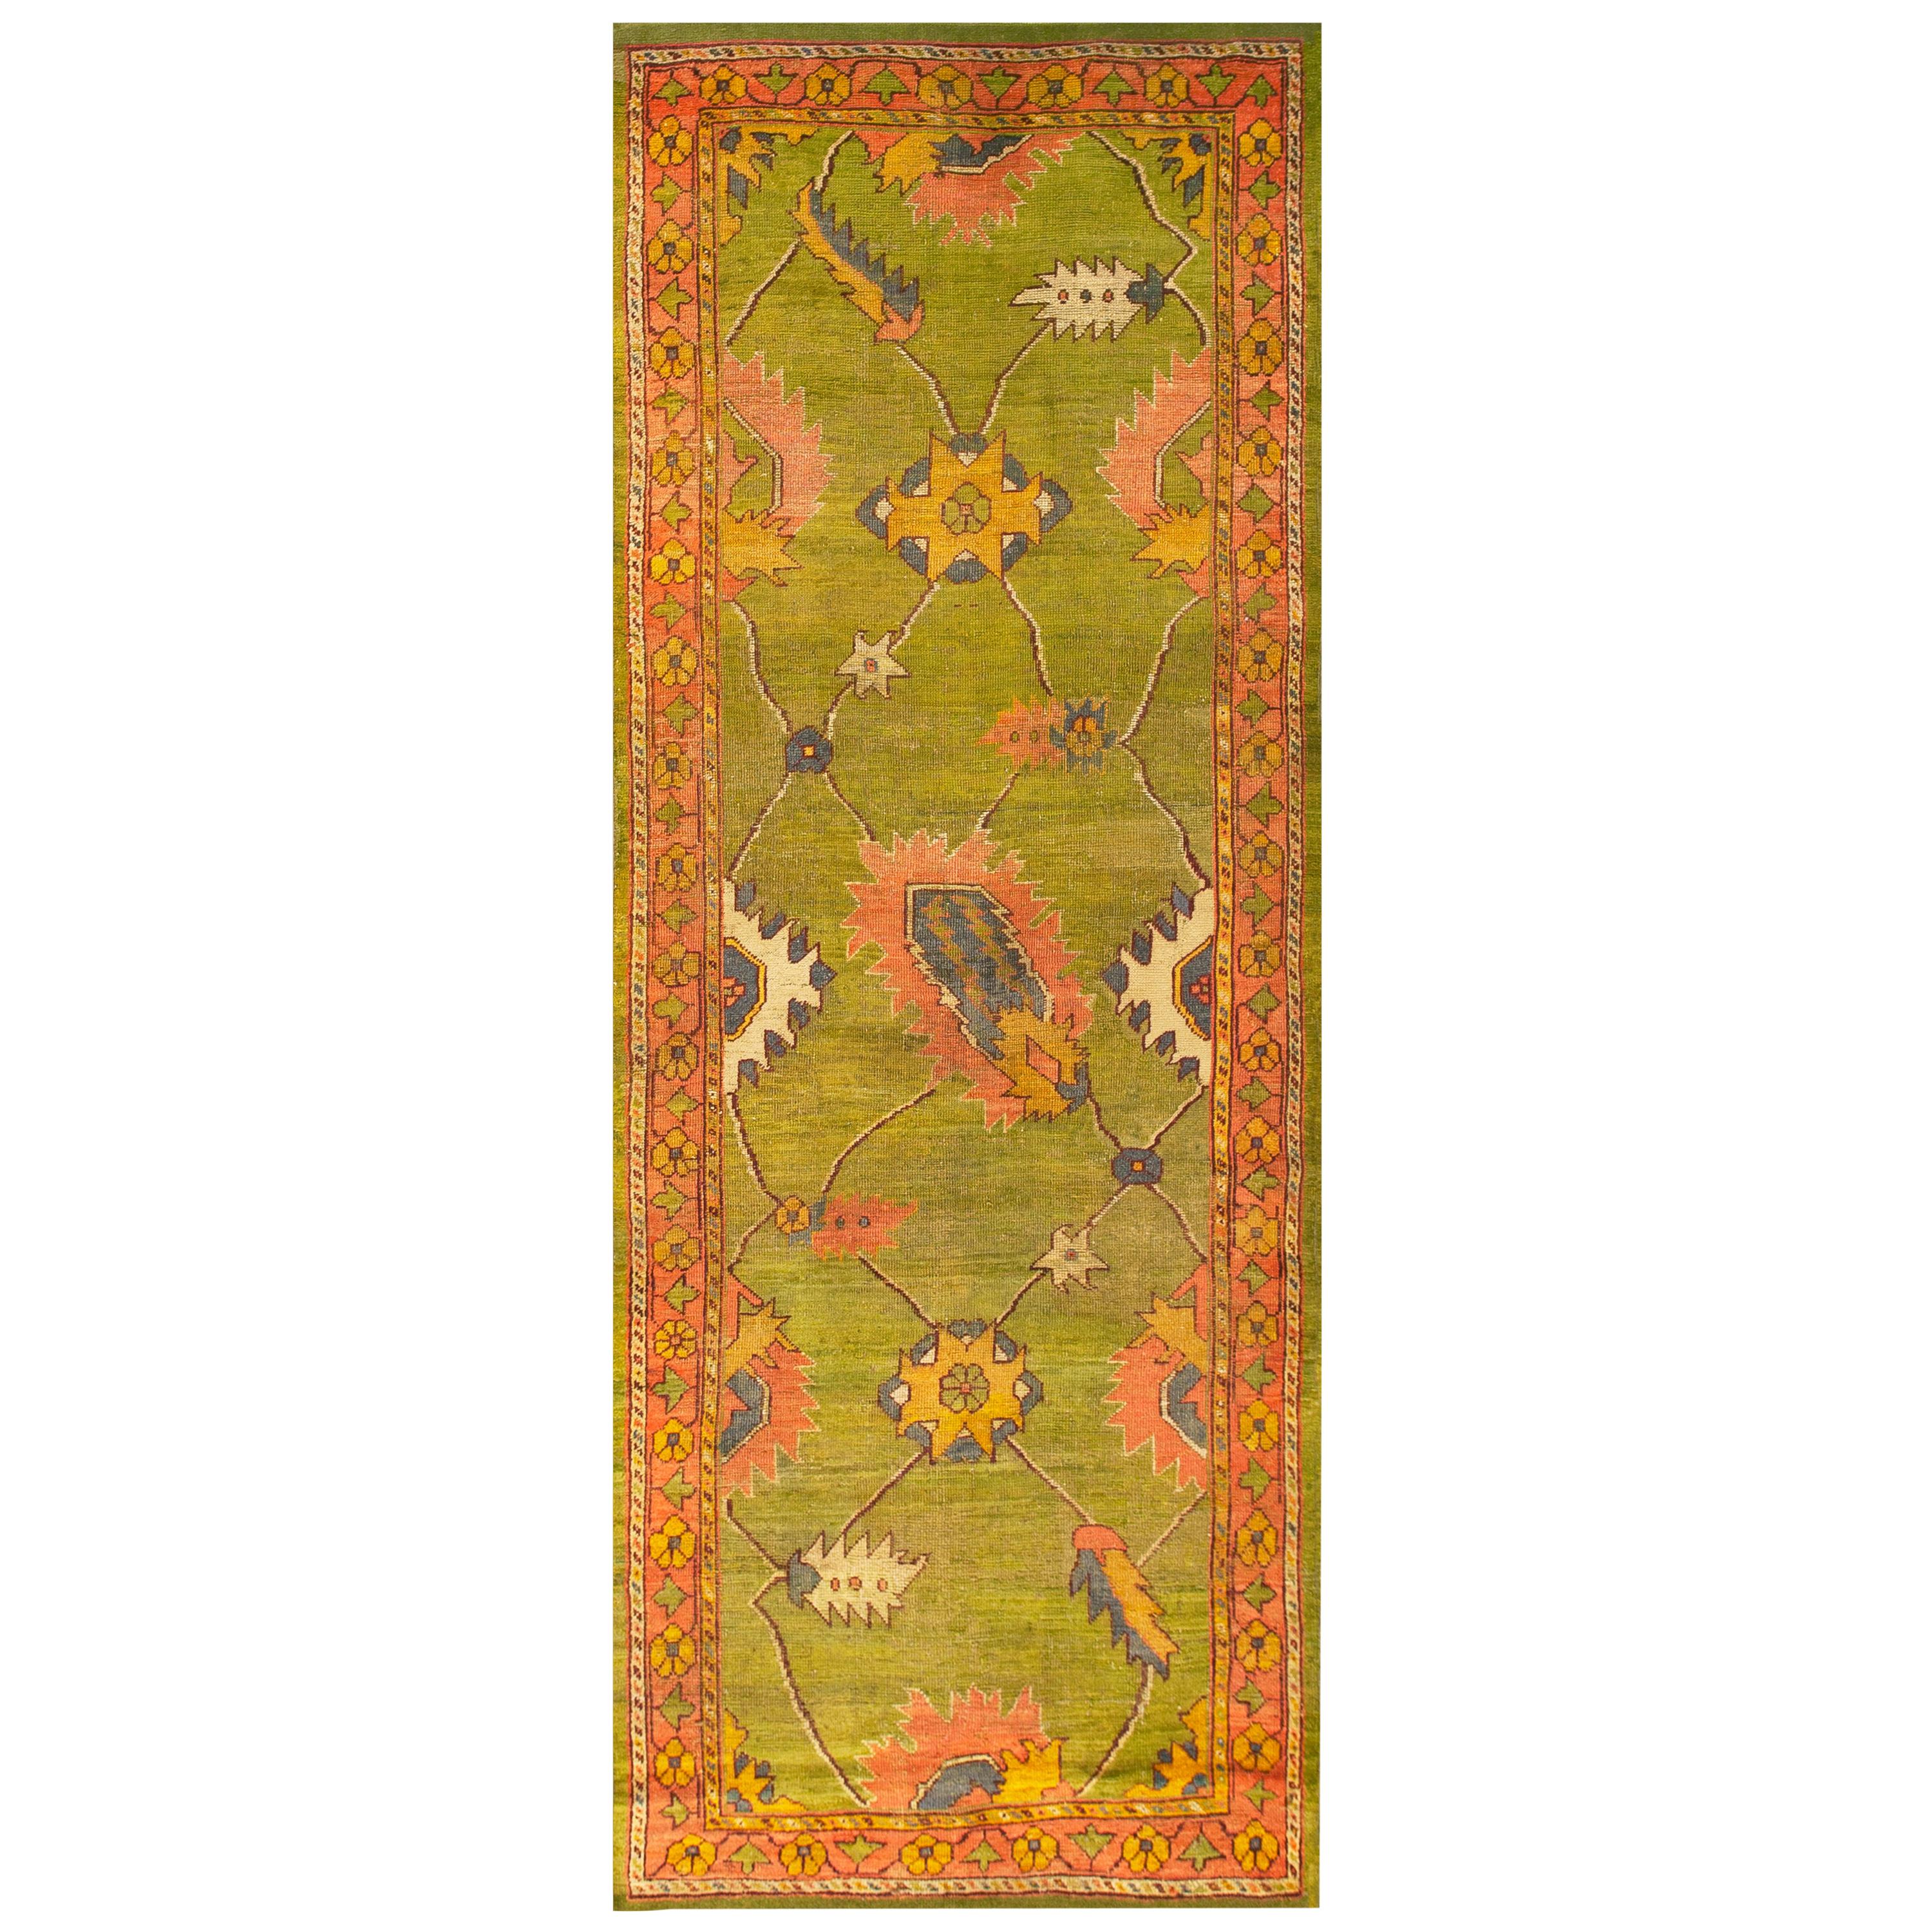 Türkischer Oushak-Teppich des späten 19. Jahrhunderts ( 4'4" x 11'6" - 132 x 350)